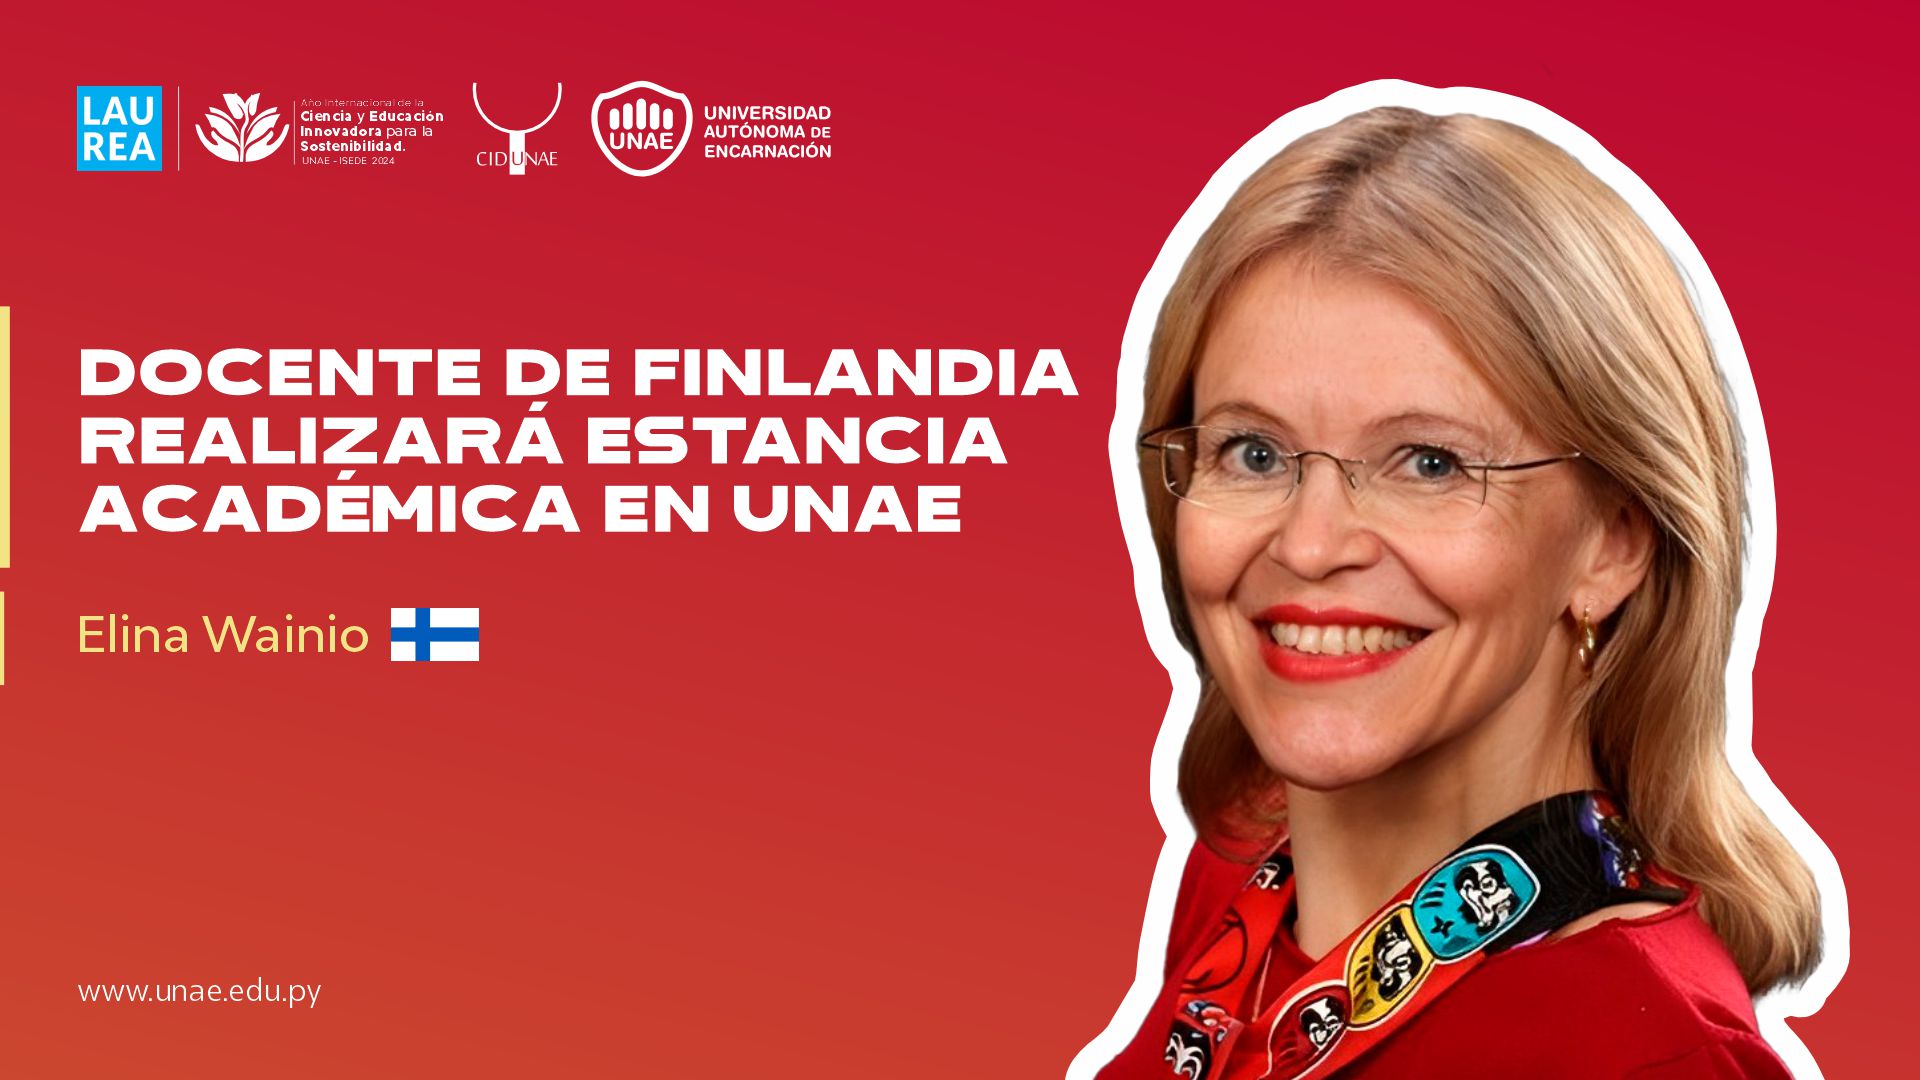 Docente de Finlandia realizará estancia académica en UNAE